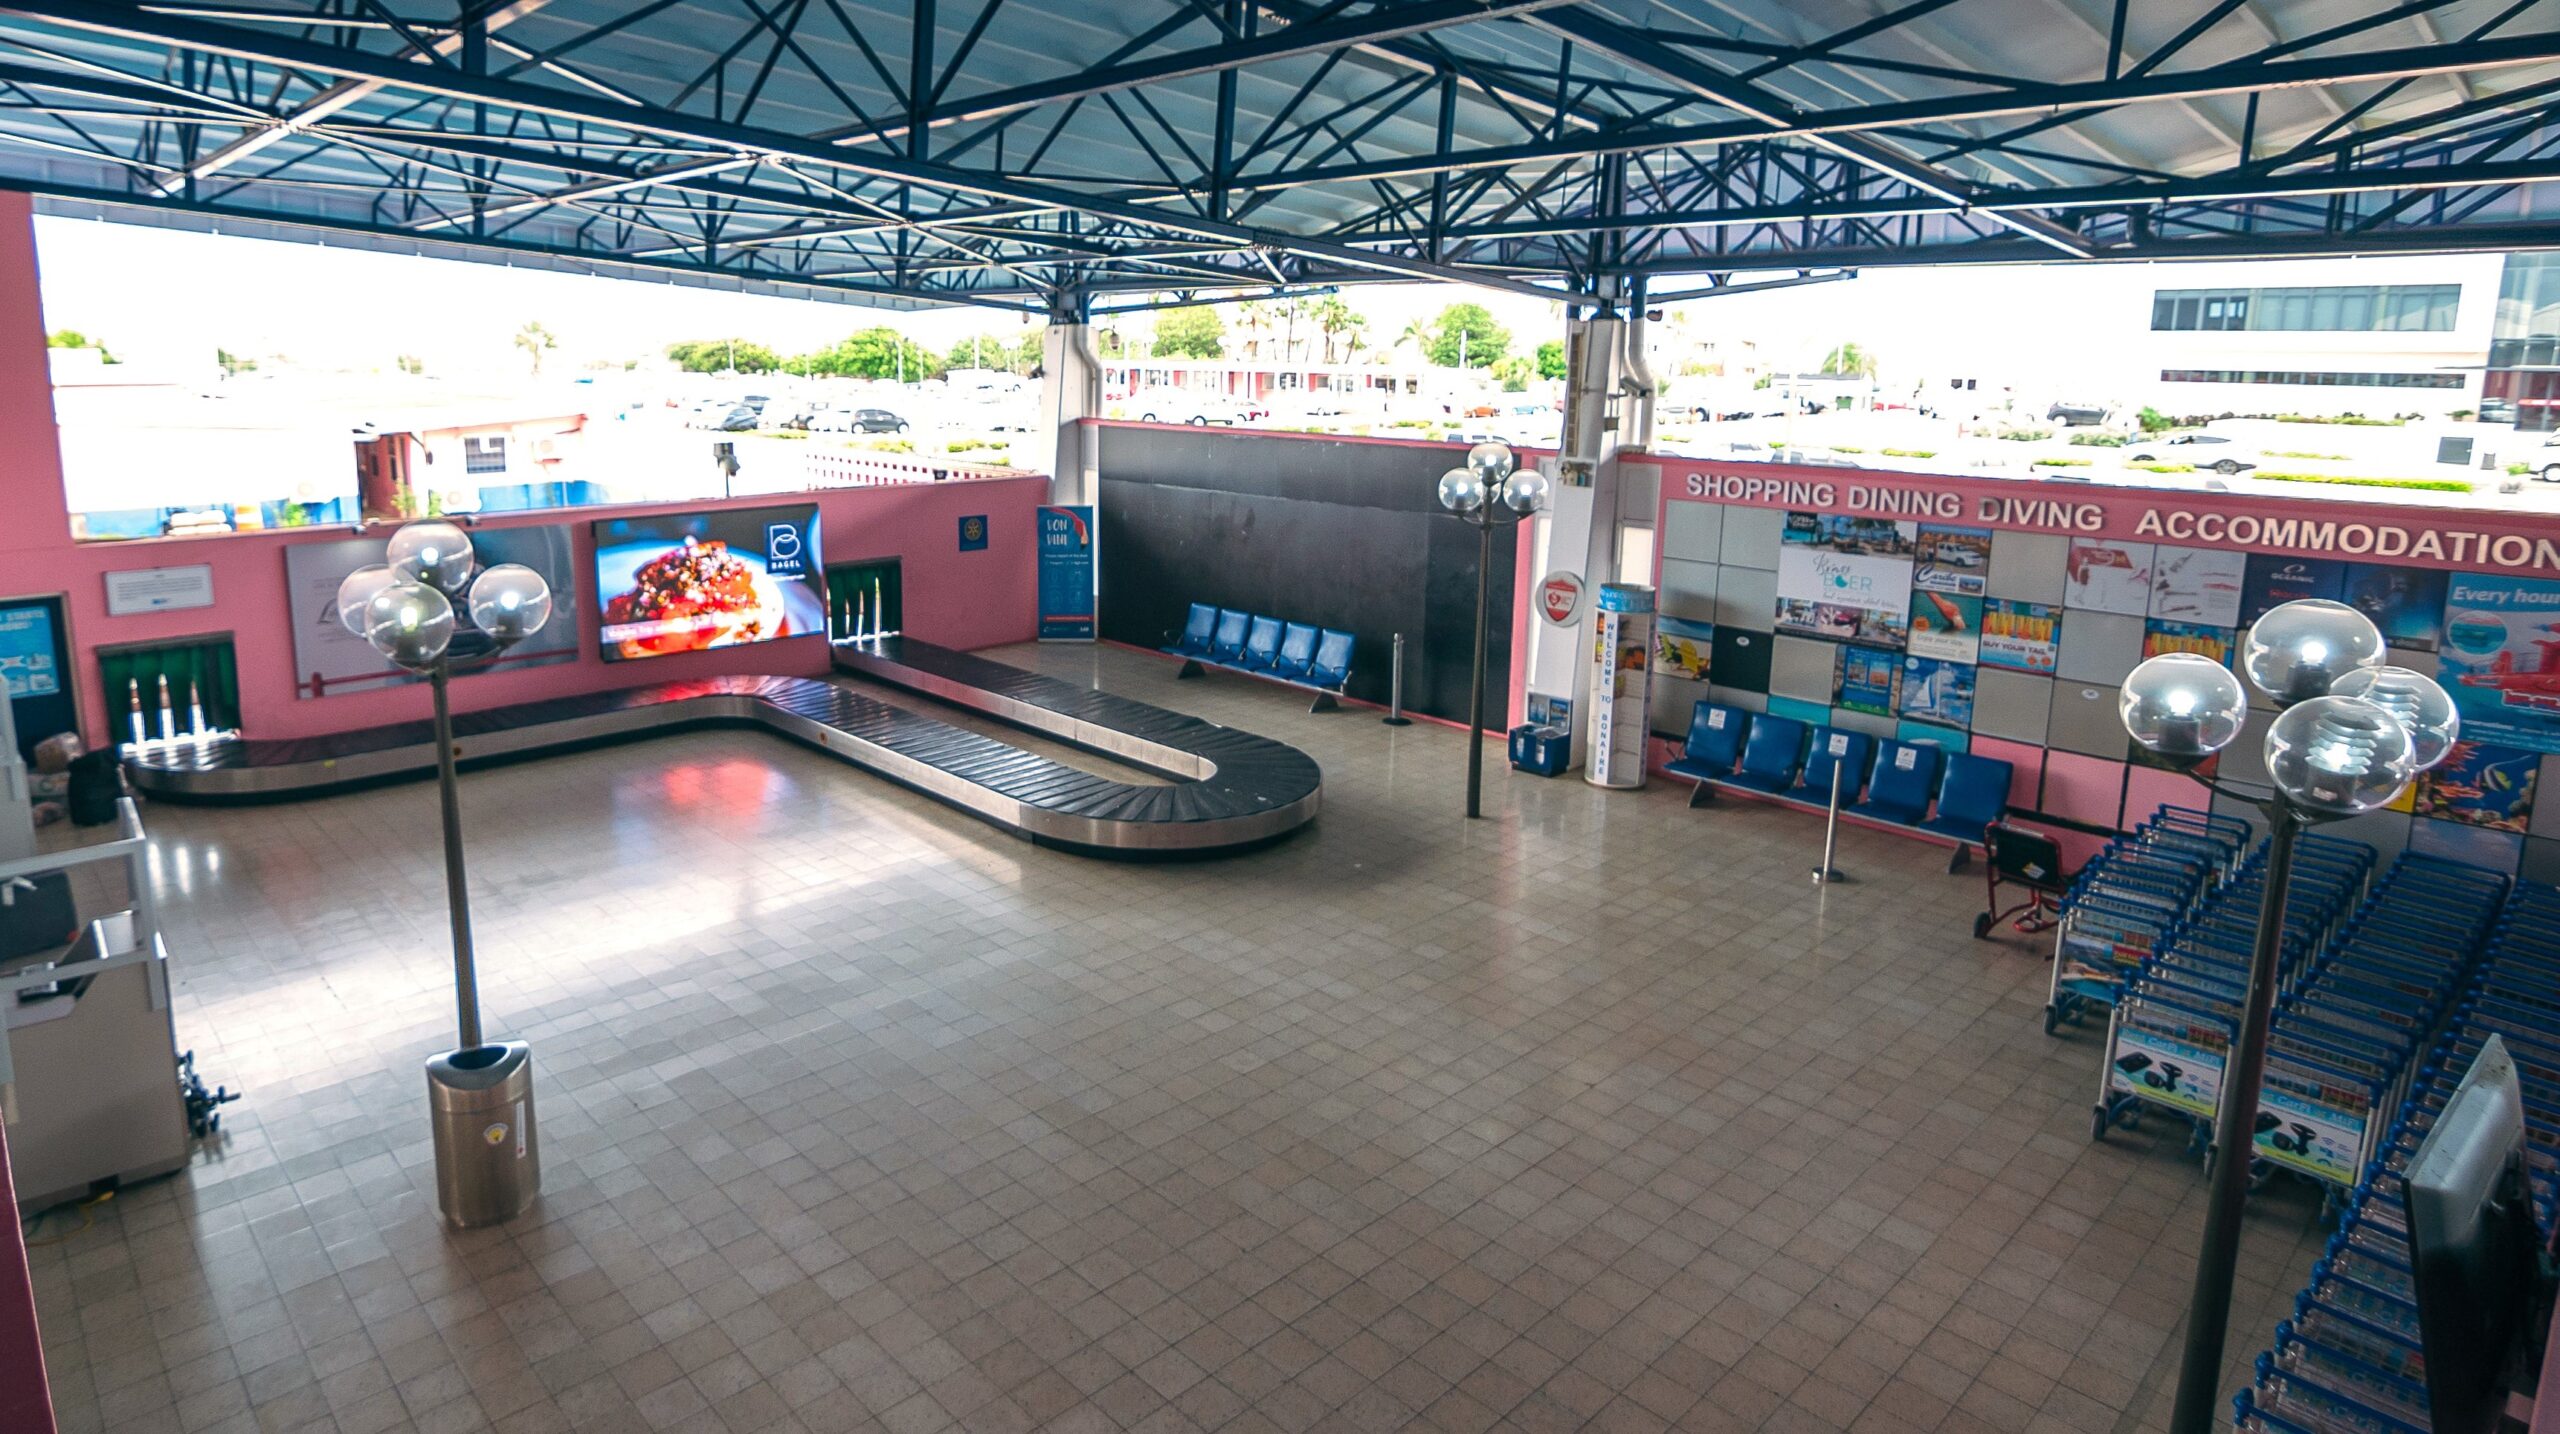 Luchthaven Bonaire krijgt grotere bagageband en aankomsthal wordt uitgebreid